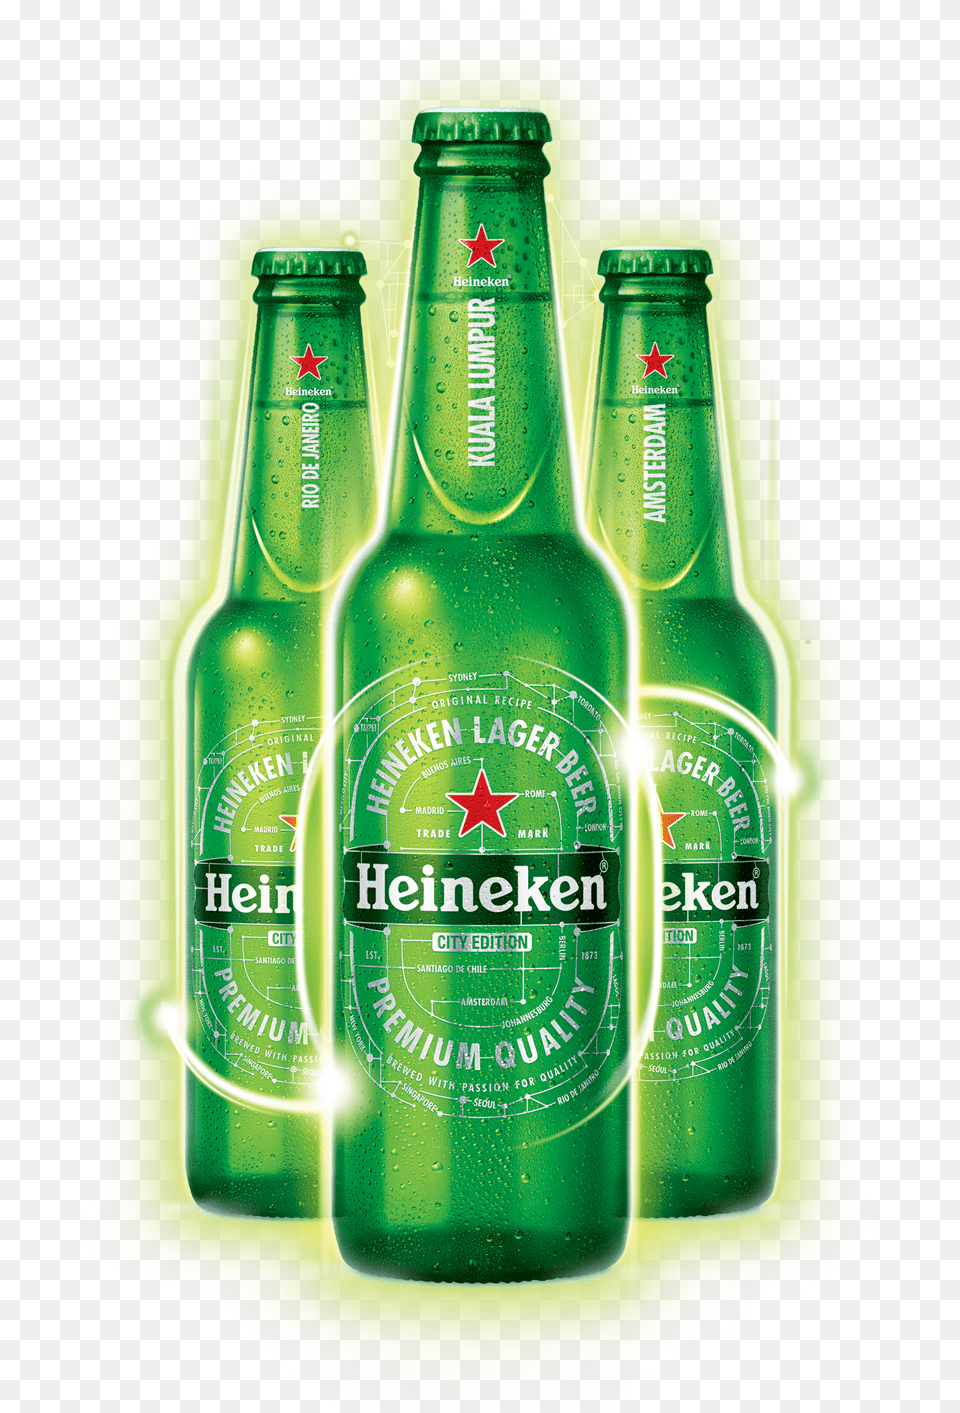 Heineken Beer Bottle Transparent, Alcohol, Beer Bottle, Beverage, Lager Free Png Download